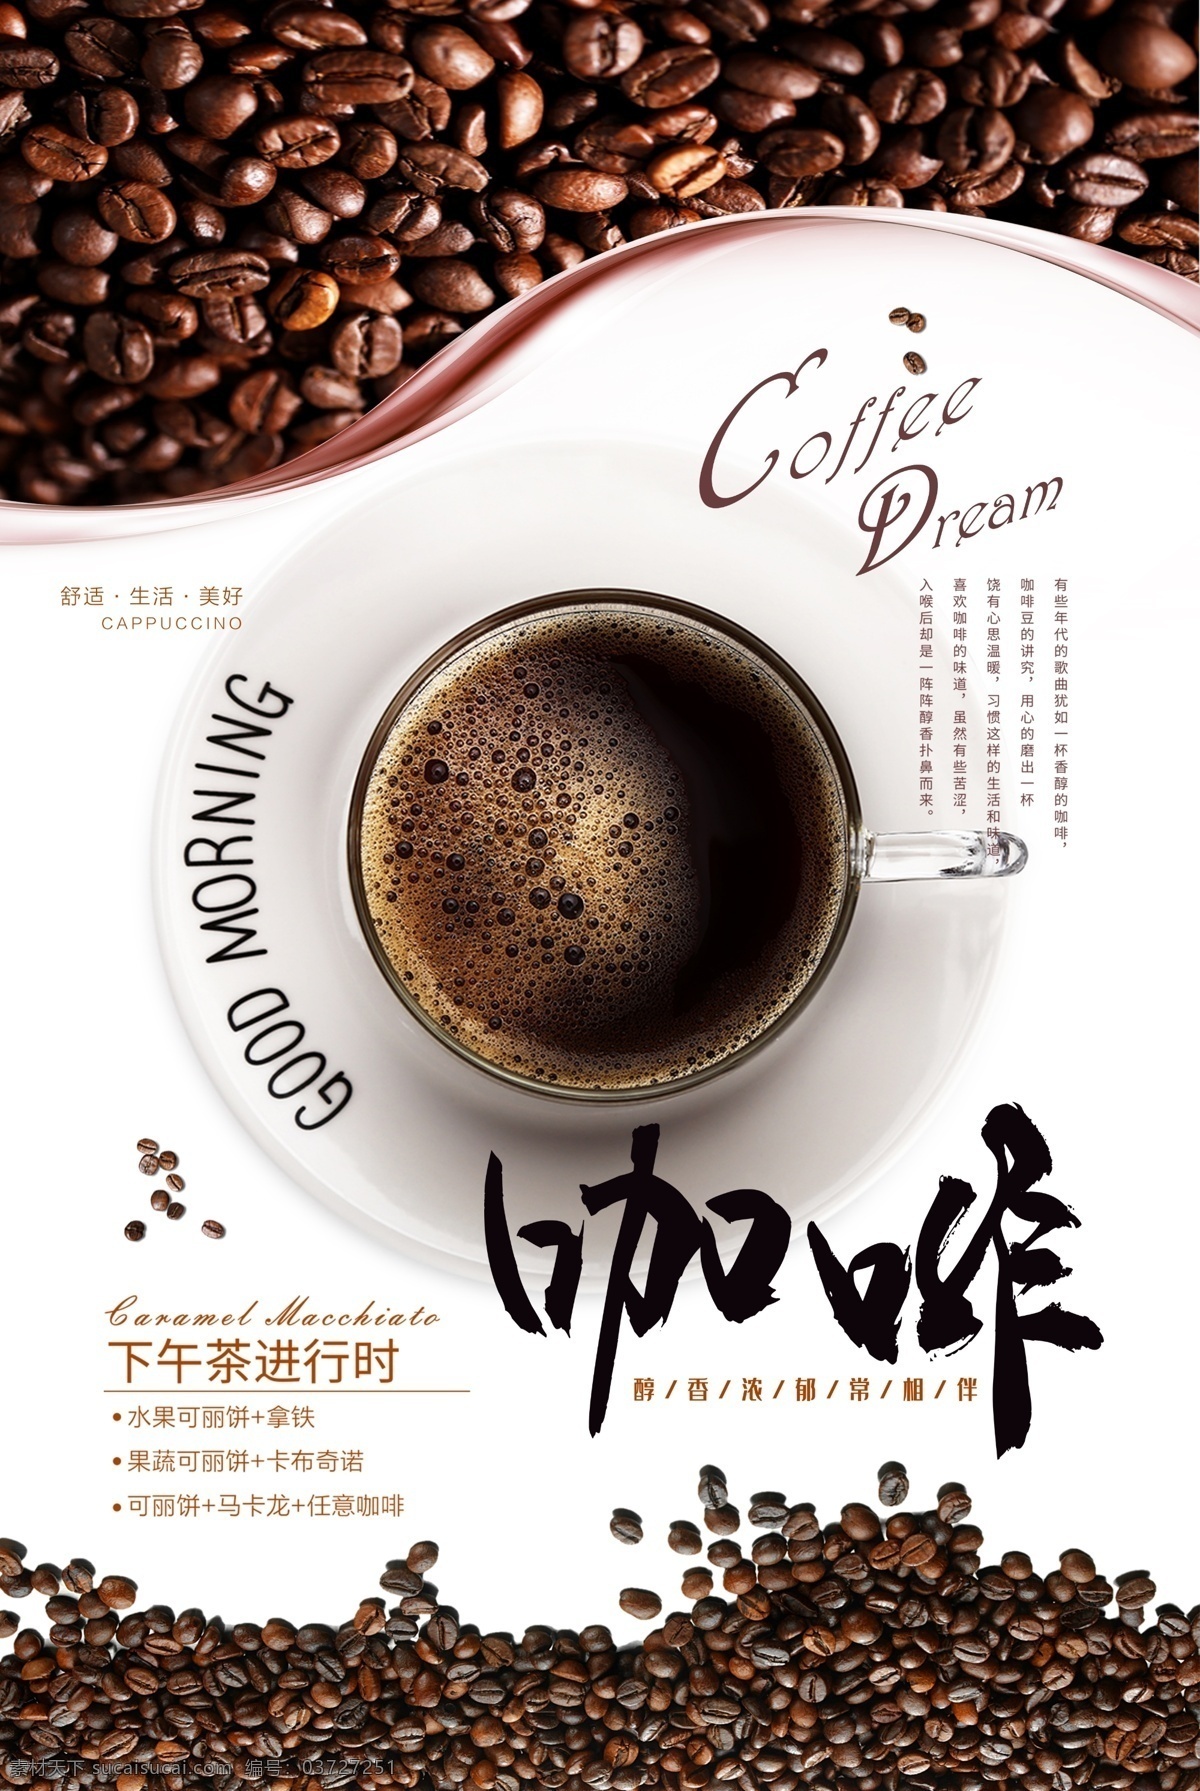 咖啡 精细 分层 咖啡海报 下午茶 咖啡时光 饮品海报 爱上咖啡